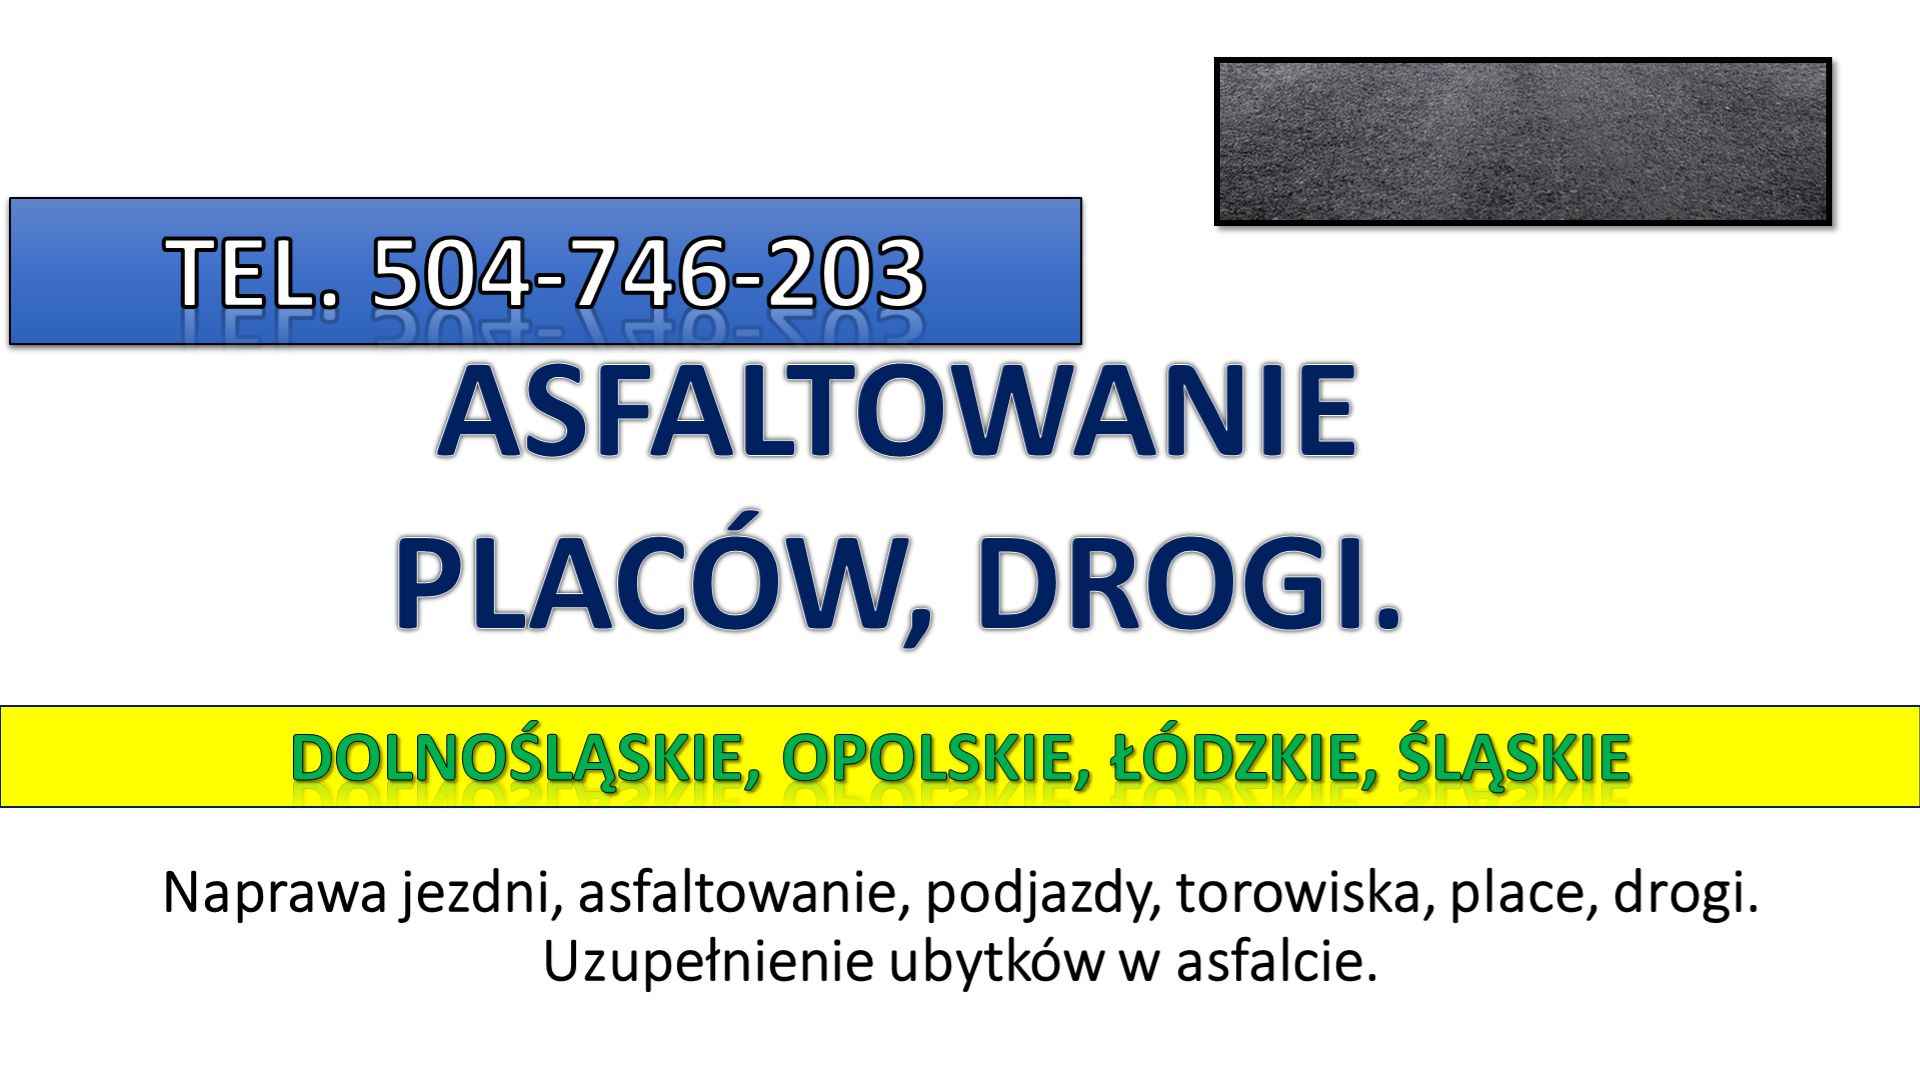 Asflaltowanie, t. 504-746-203, Wrocław, Łódź, Opole, układanie asfaltu Psie Pole - zdjęcie 2